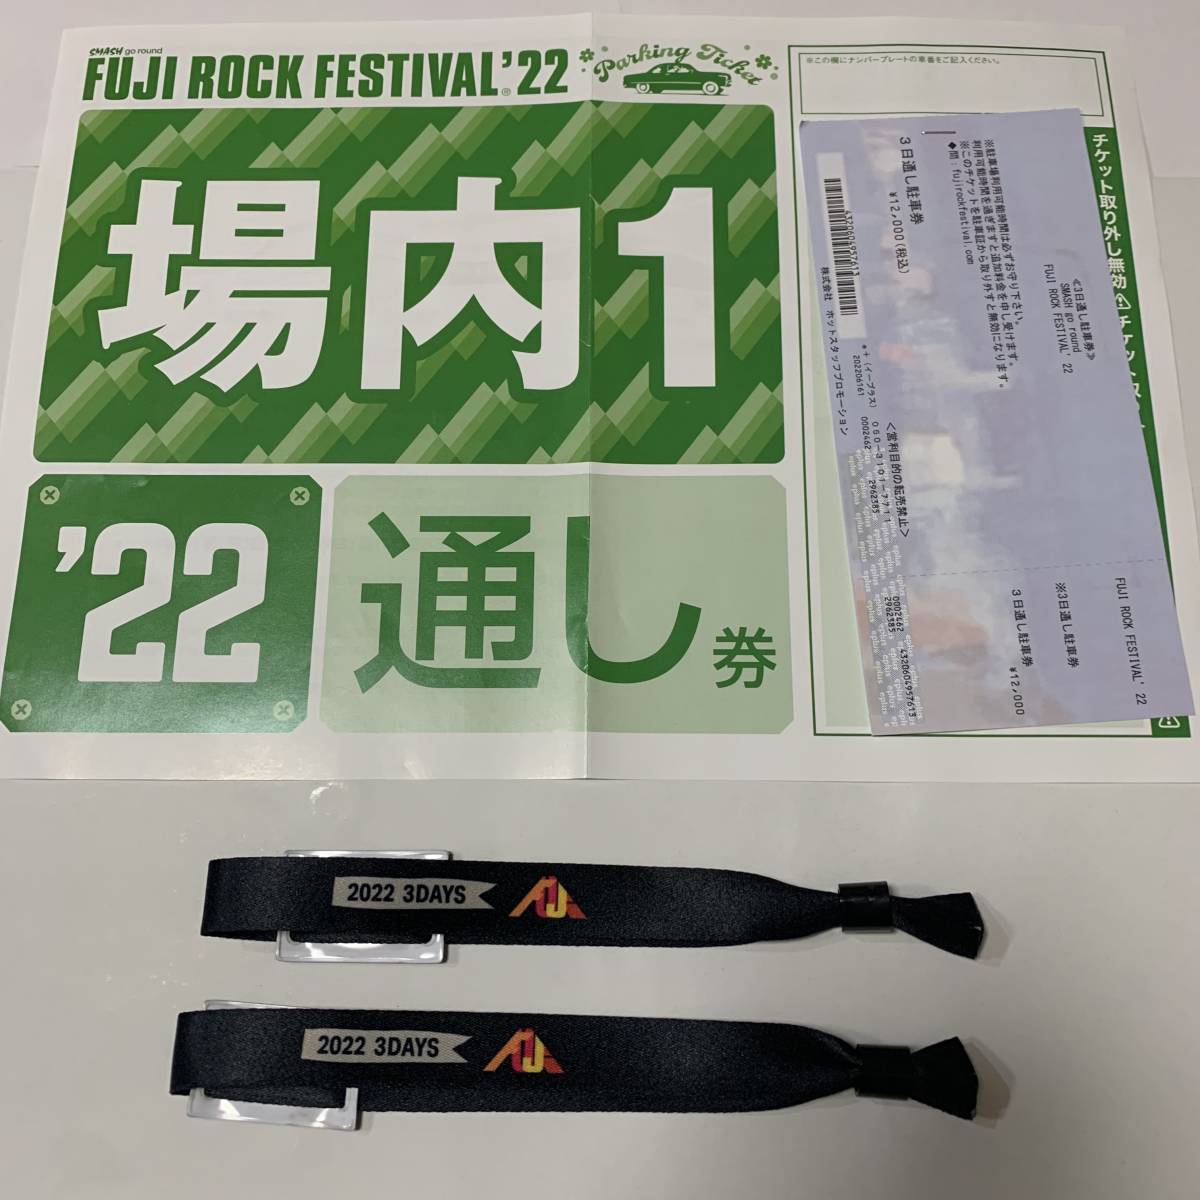 春新作の フジロックフェスティバル チケット1枚 7/31 2022 音楽フェス